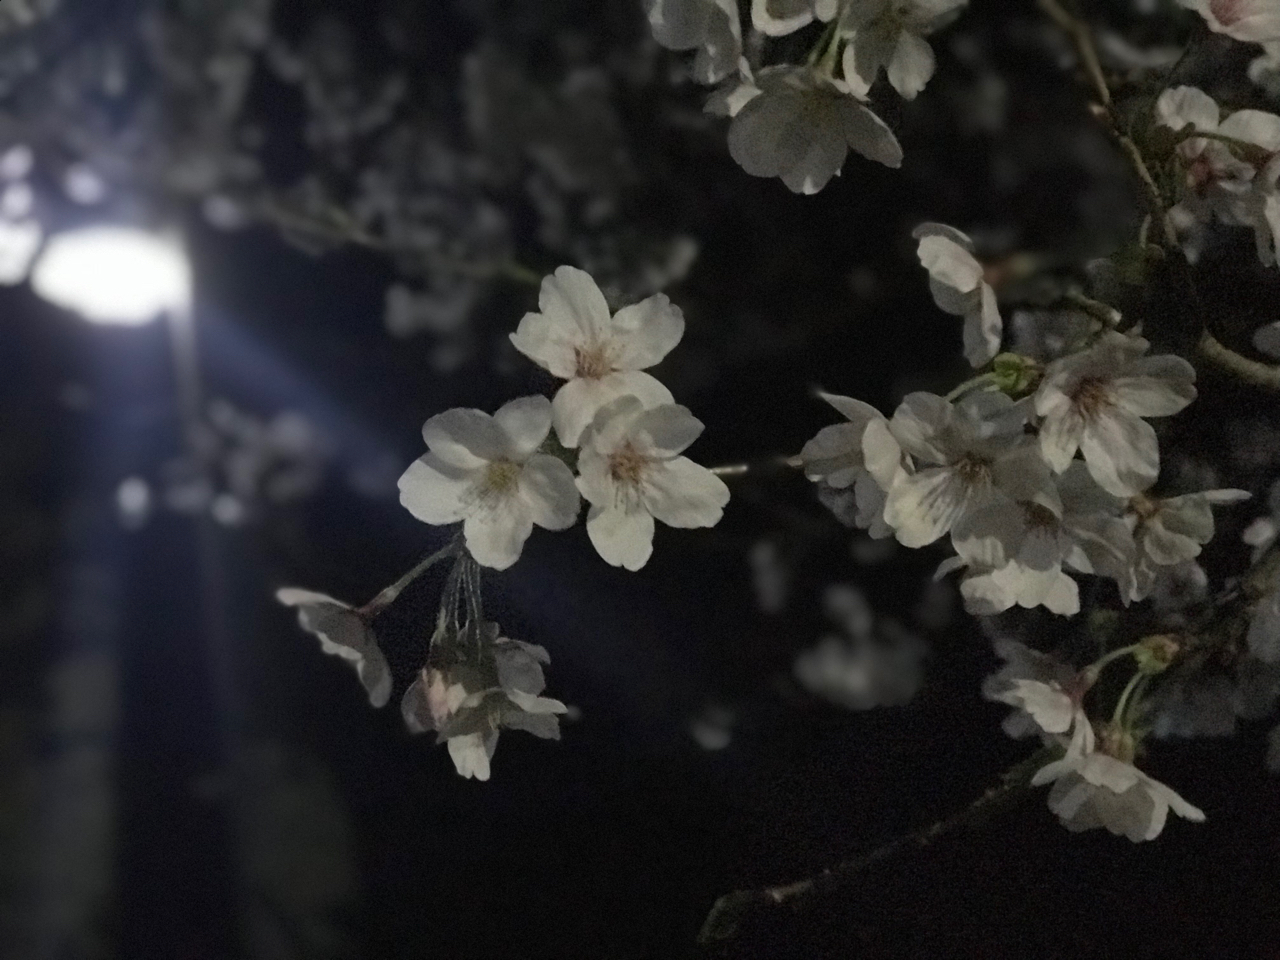 村竹将太が投稿したフォト「桜」 - 2018-04-04 16:23:19 | LIMIA (リミア)